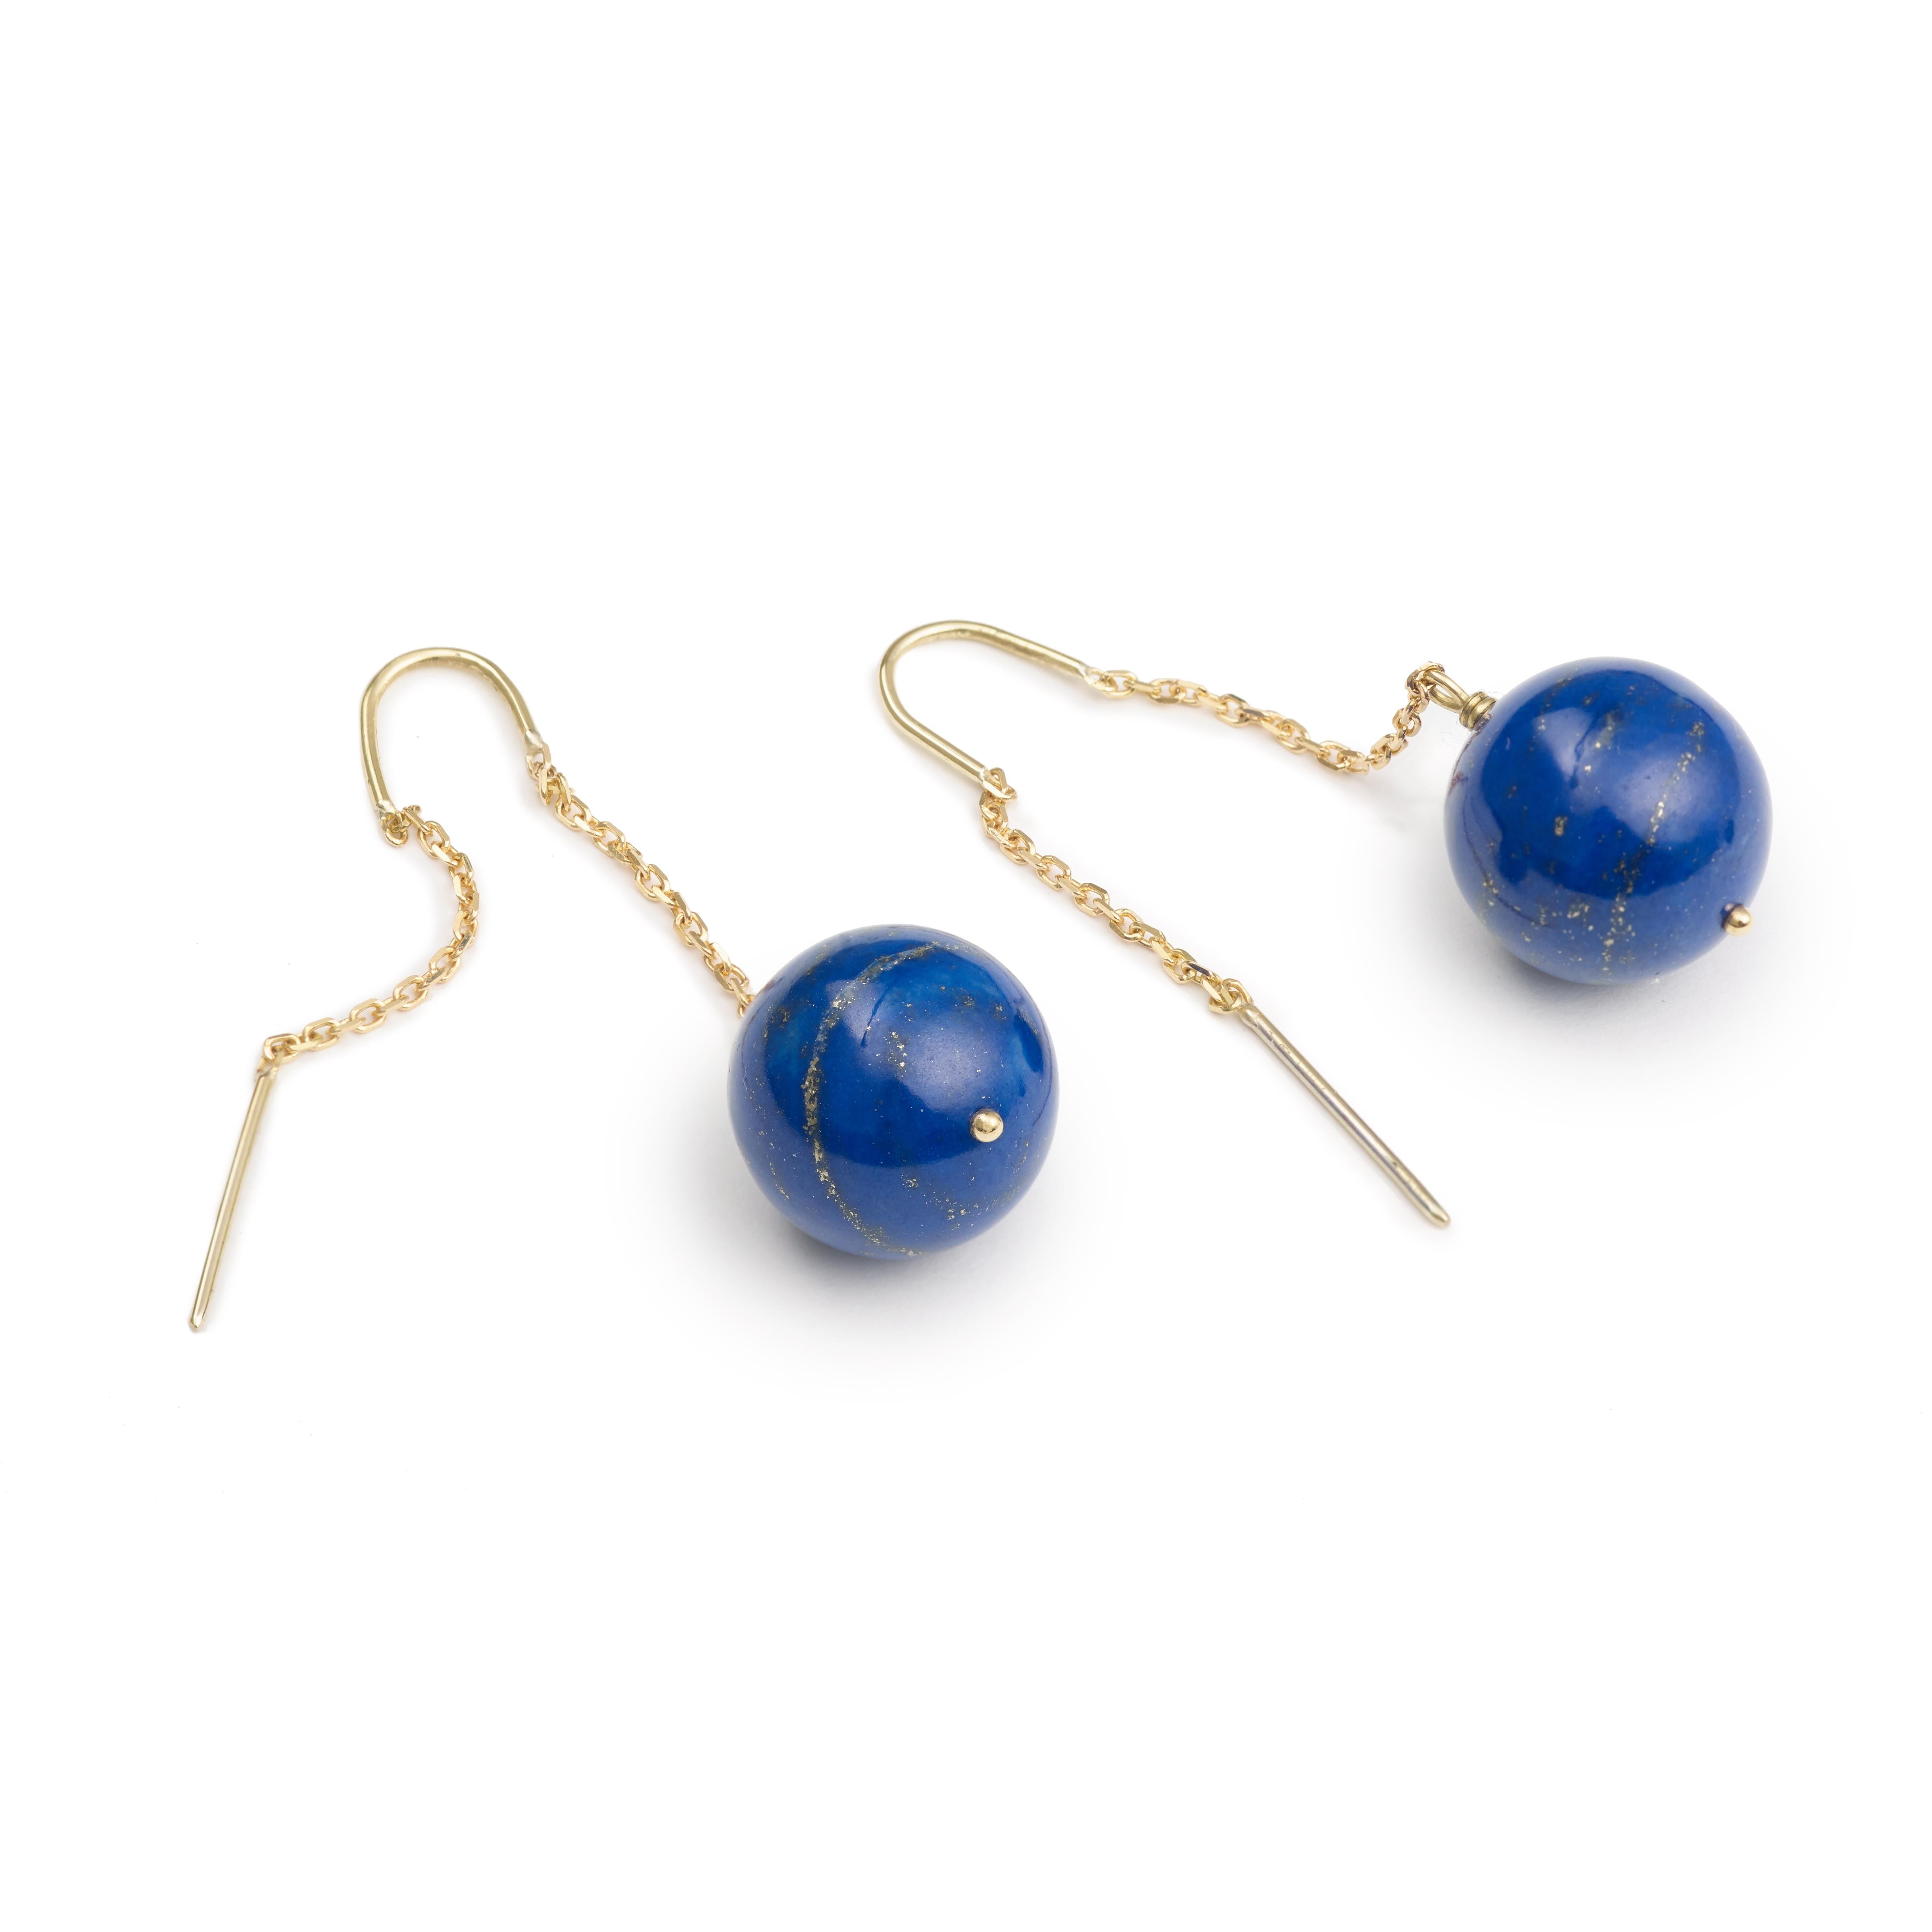 Jolie paire de boucles d'oreilles en or avec une boule en lapis-lazuli sur chaque boucle.

Dimensions des boules de lapis-lazuli : 13 x 13 mm (0,51 x 0,51 pouce)

Poids total des boucles d'oreilles : 10.1 g

or jaune 18 carats, 750/1000ème

Nous